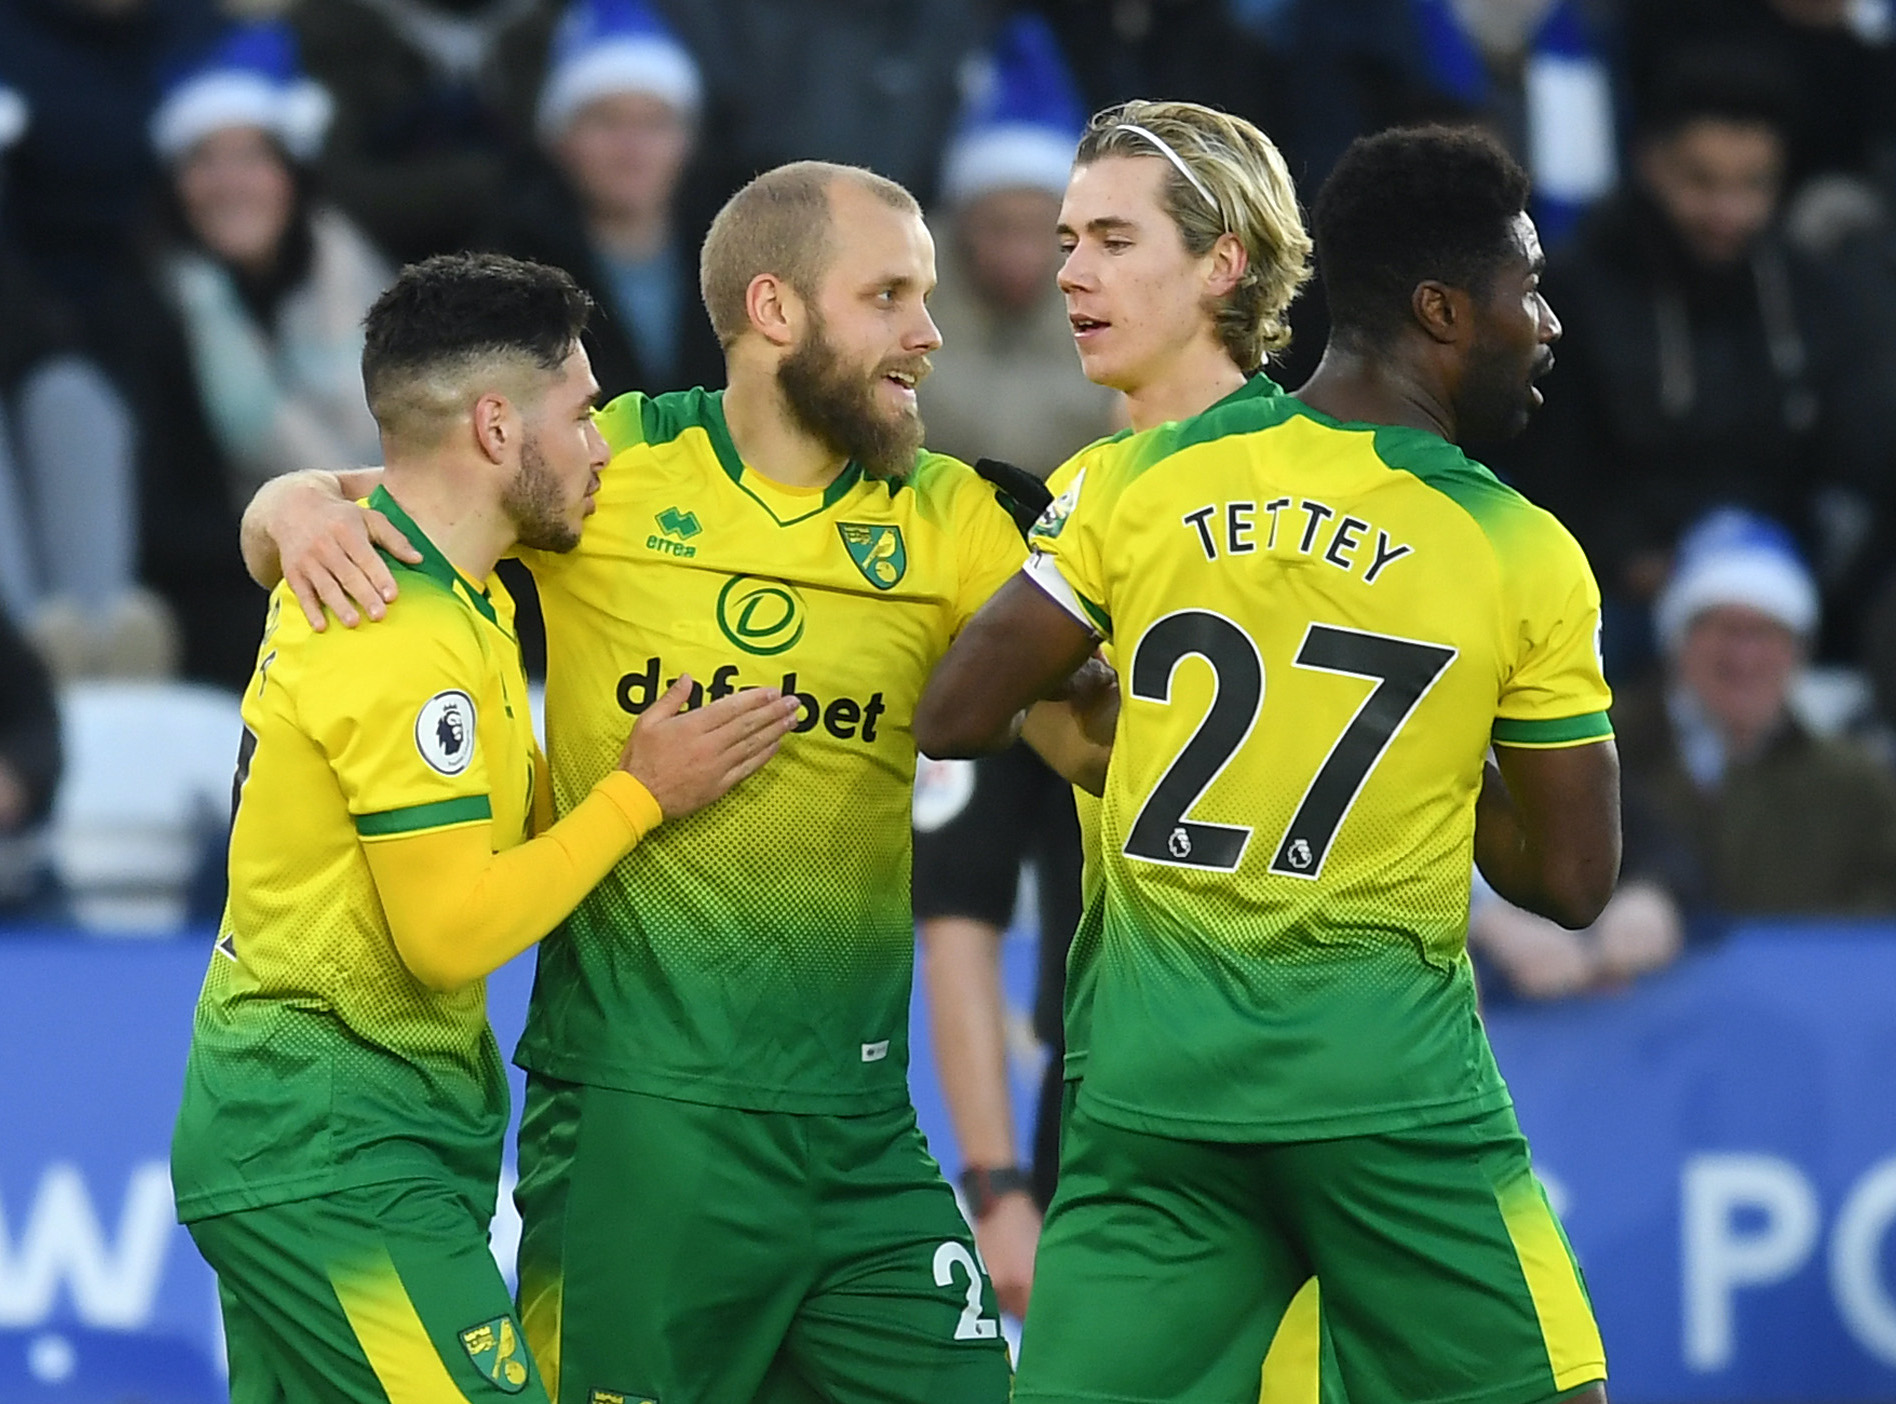 Leicester City v Norwich City – Premier League